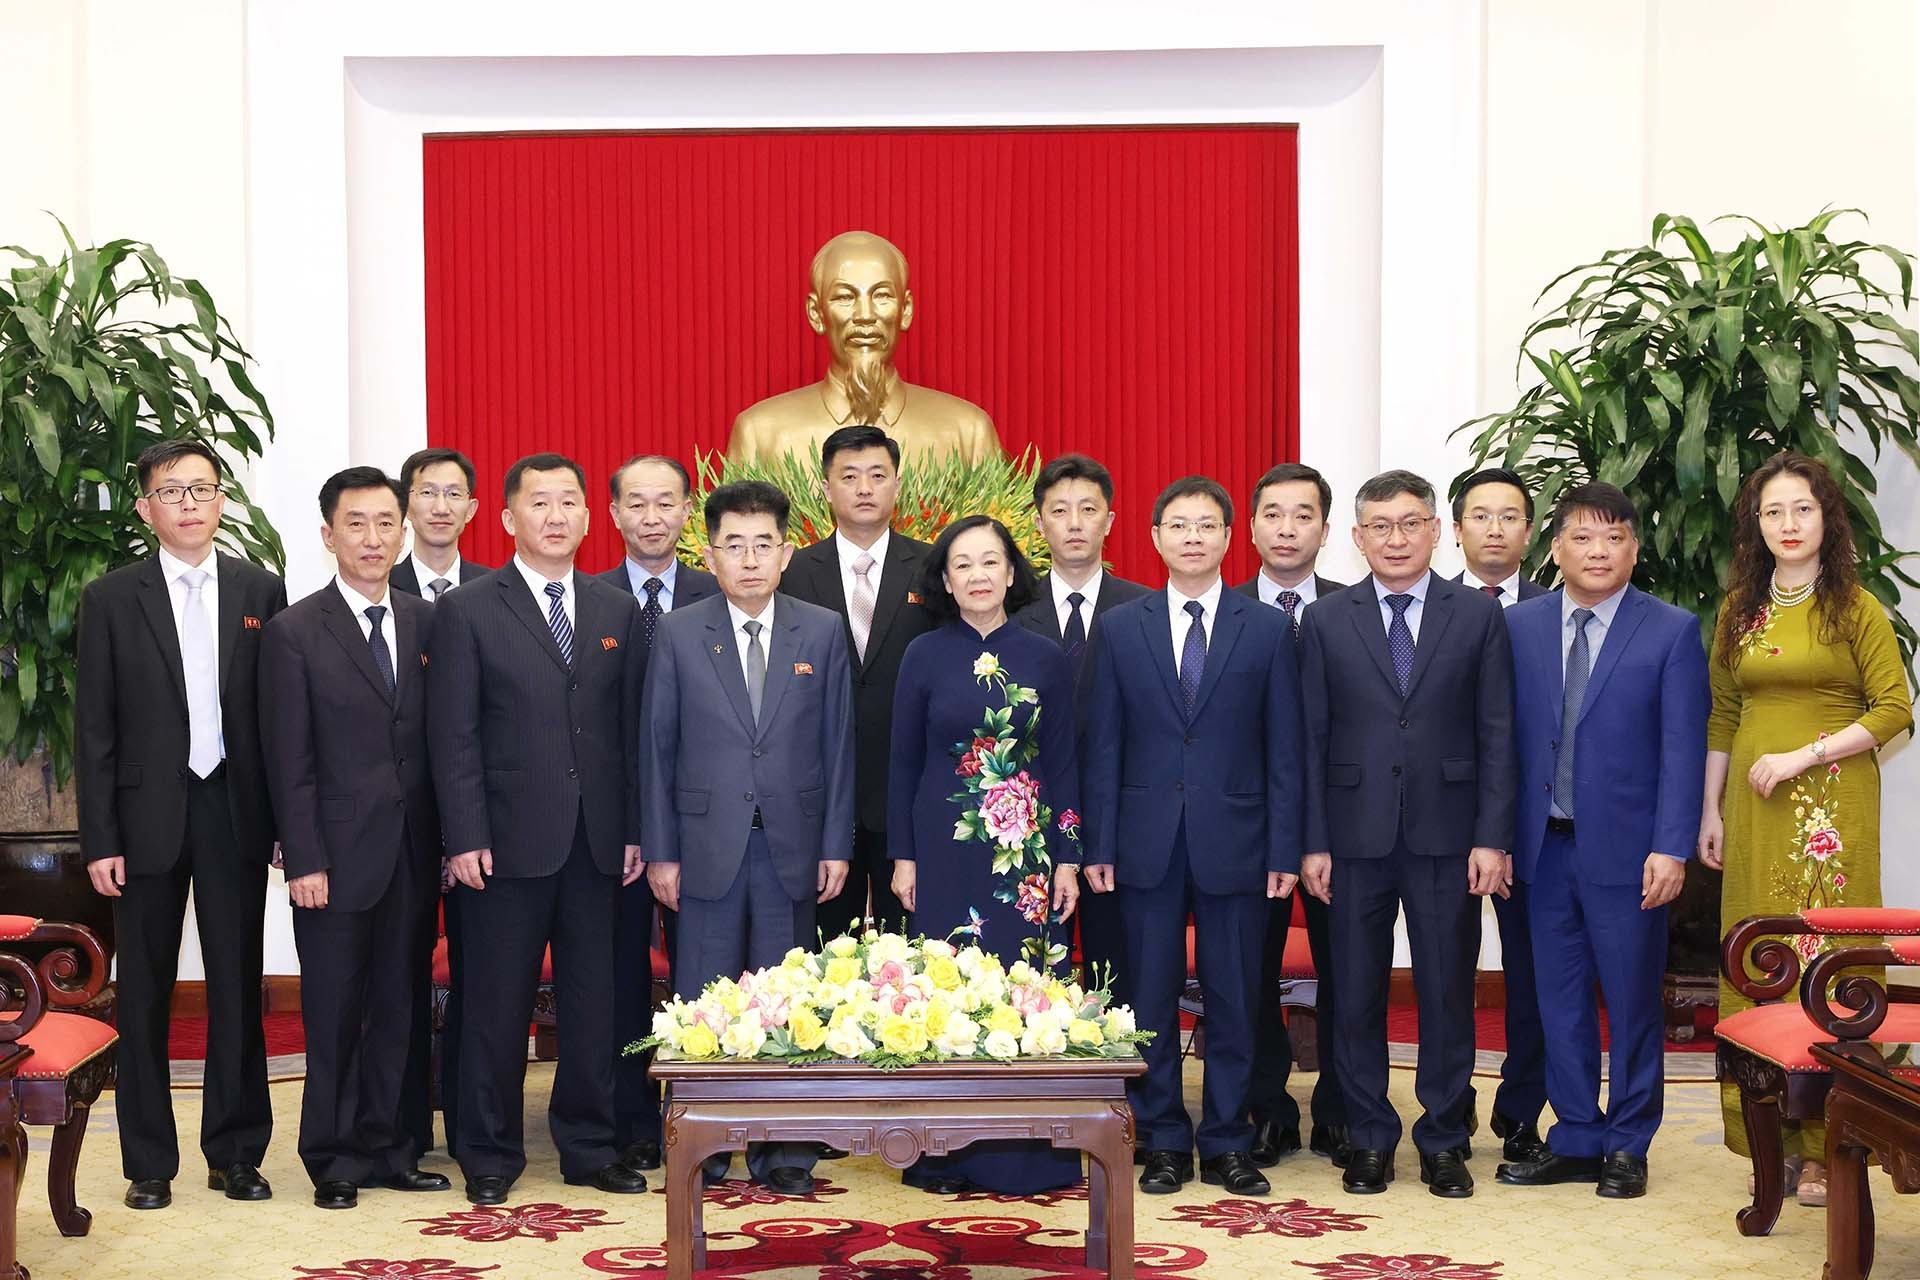 Thường trực Ban Bí thư Trương Thị Mai tiếp đoàn đại biểu Đảng Lao động Triều Tiên